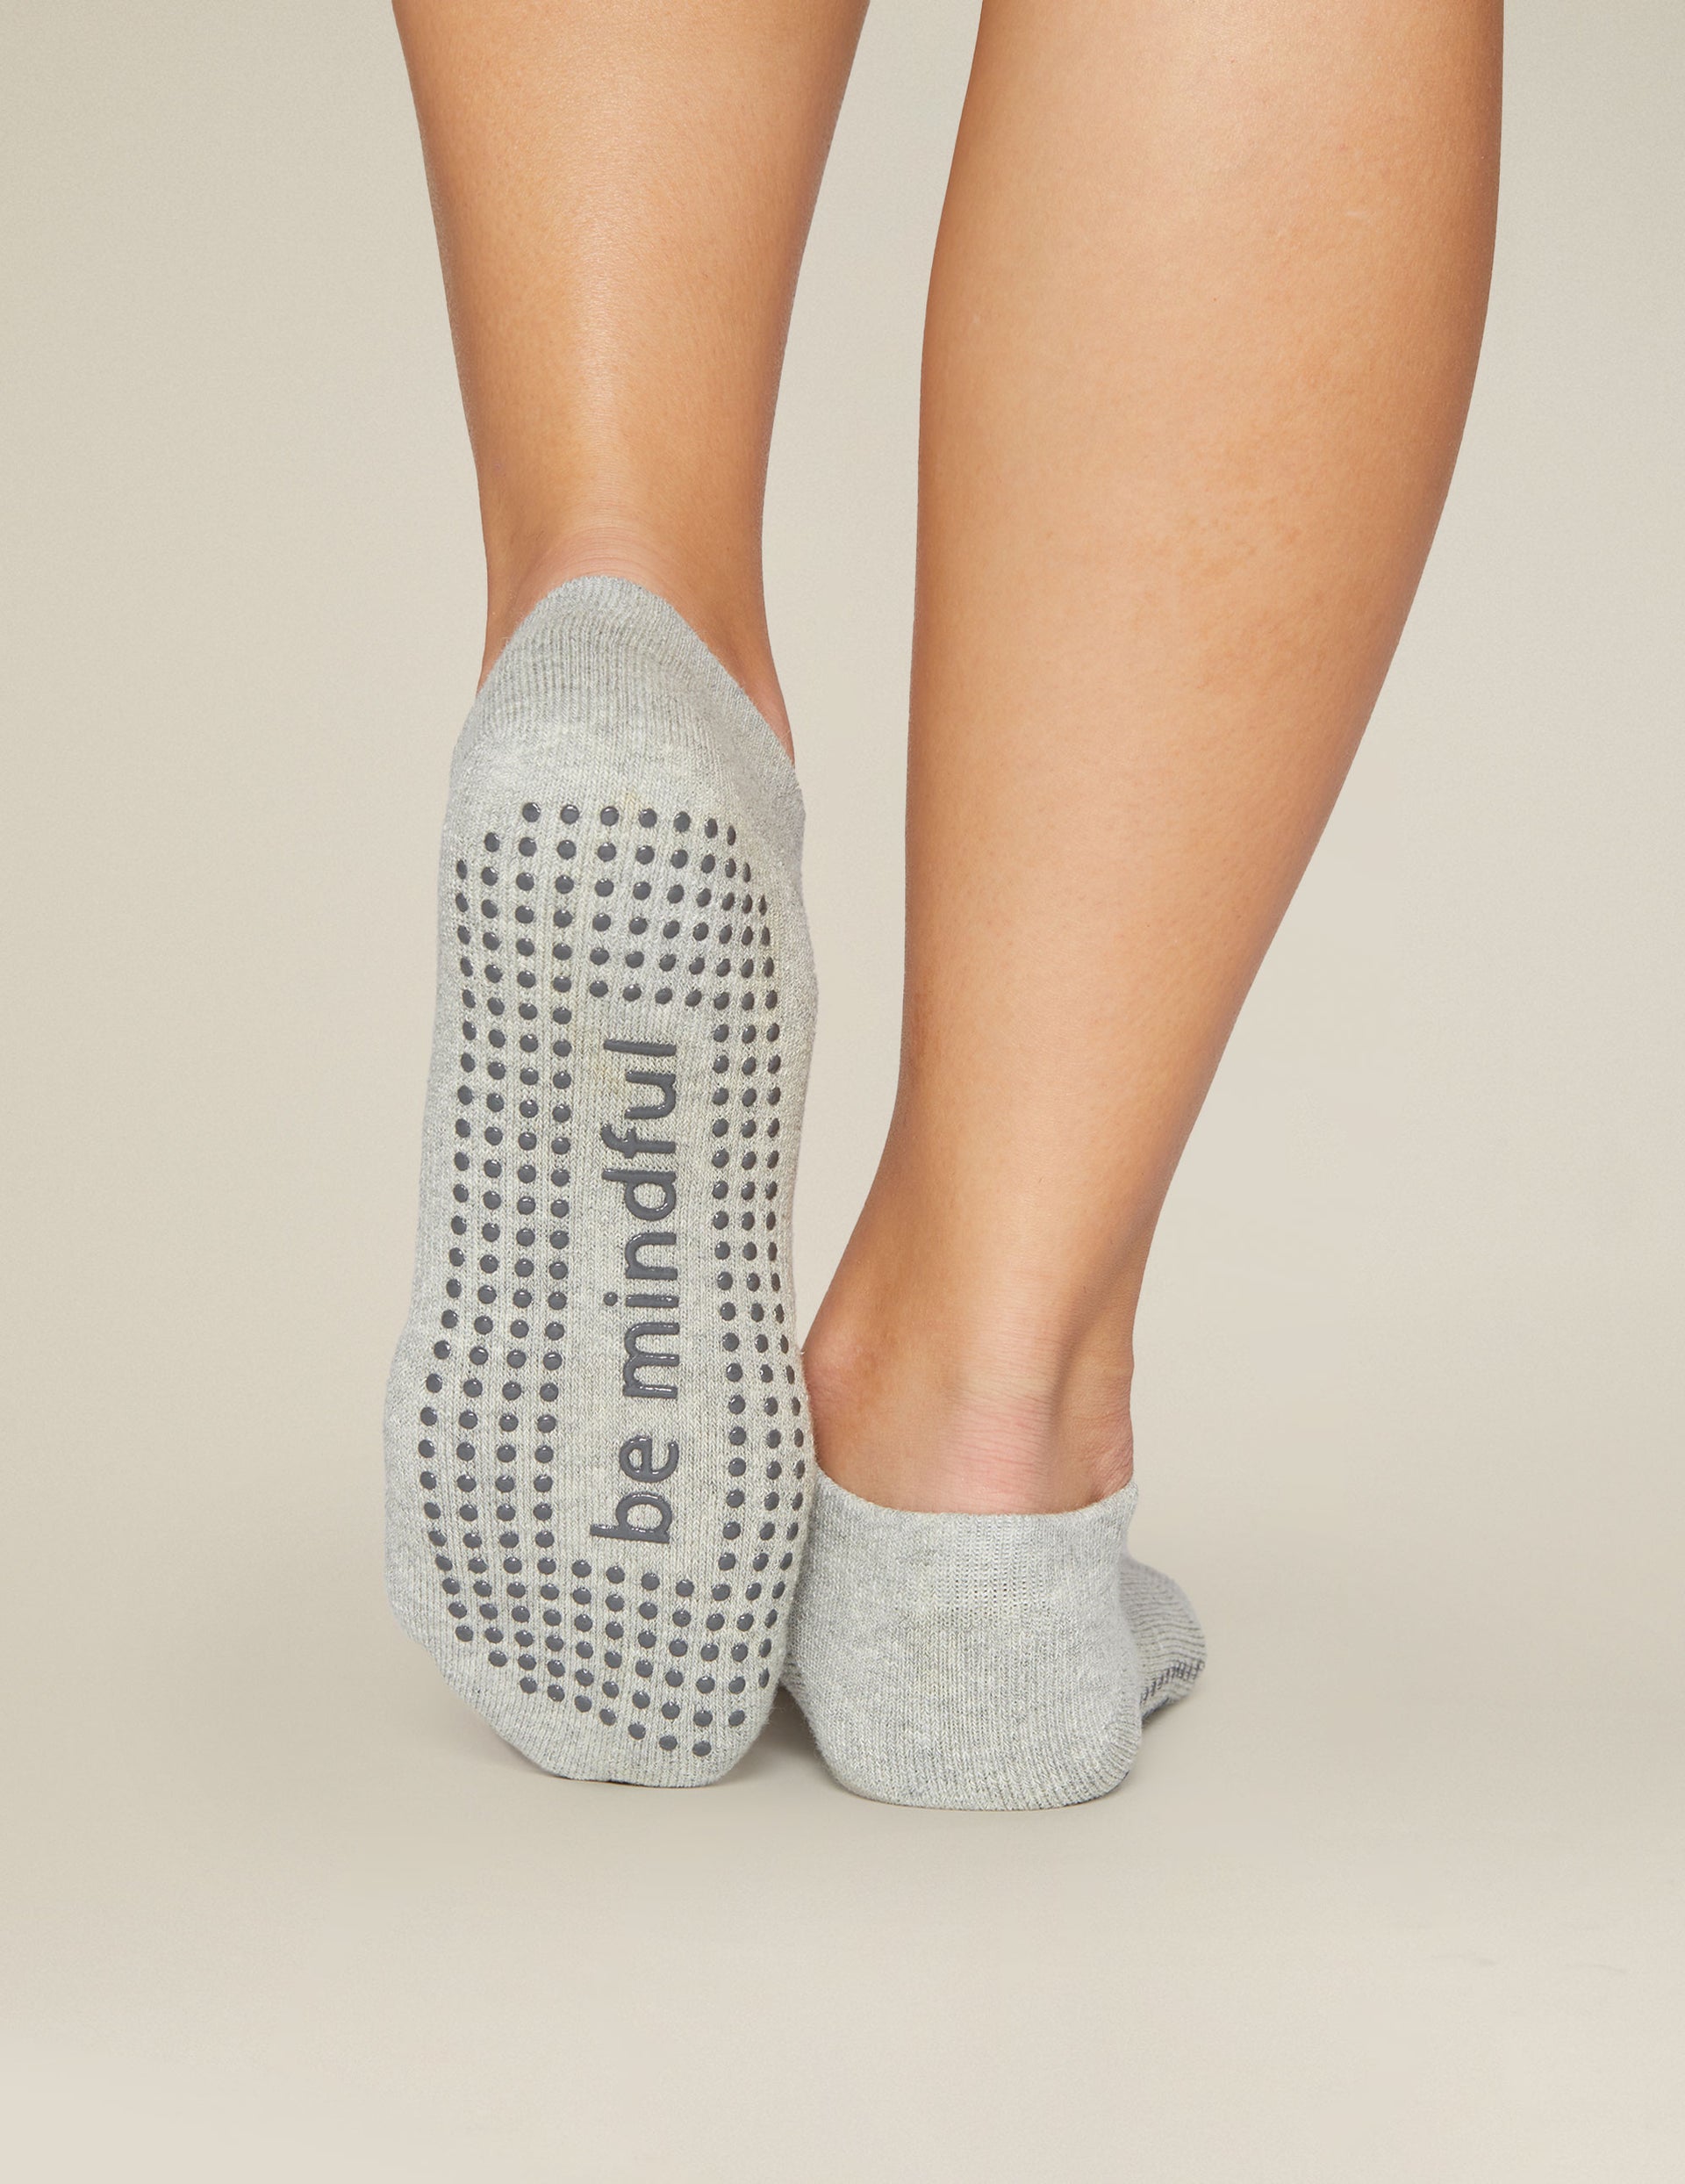 Women's Gripper Calf Socks  Calf socks, Calves, Pilates class